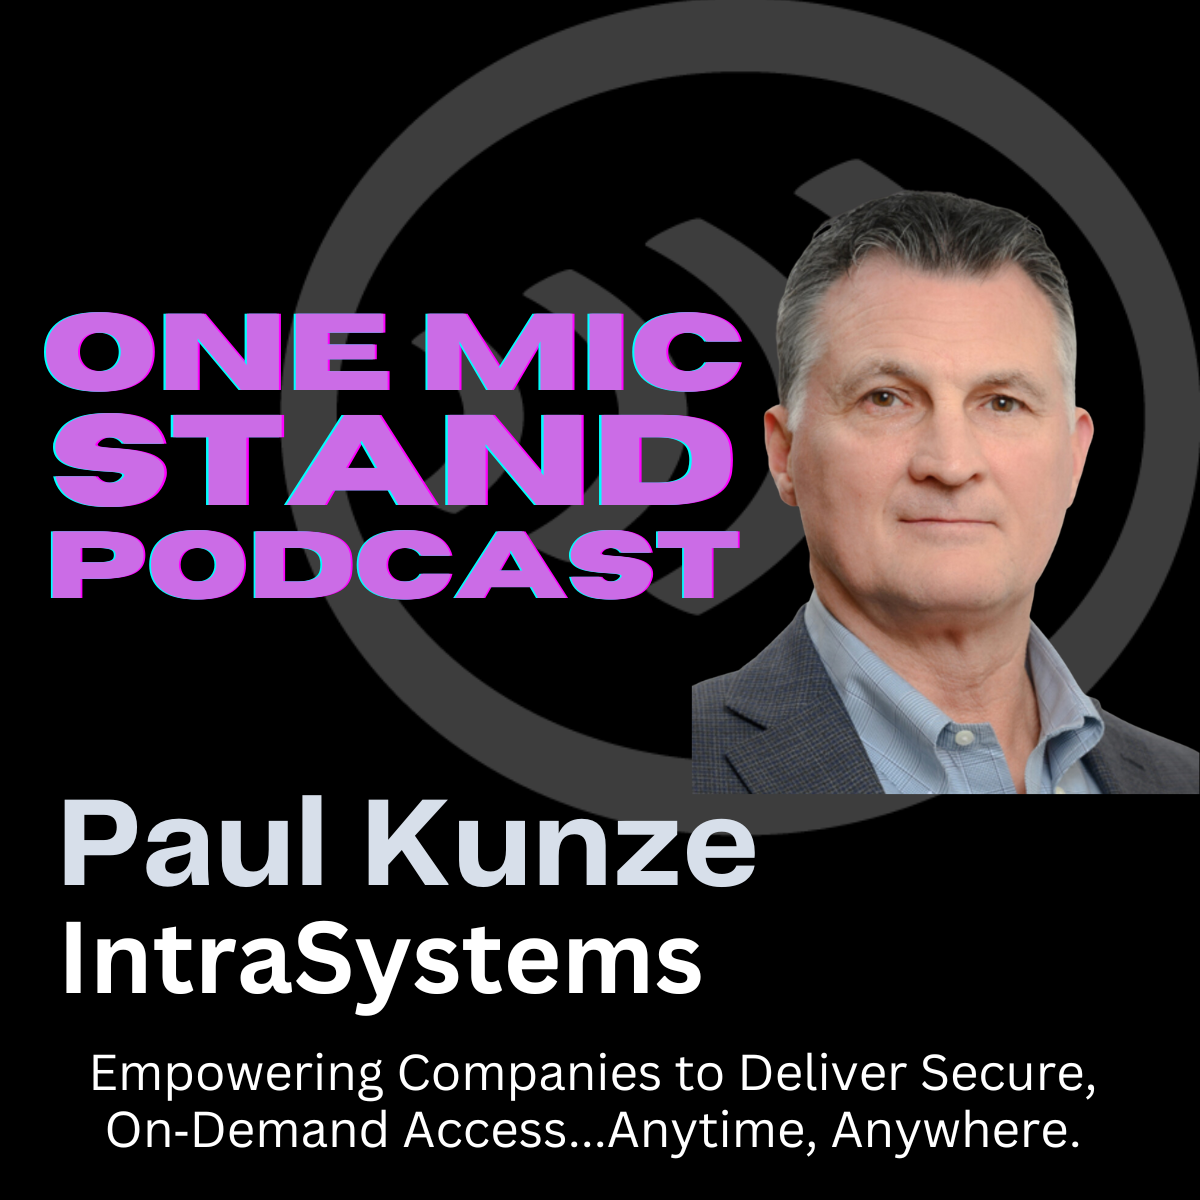 Paul Kunze of IntraSystems